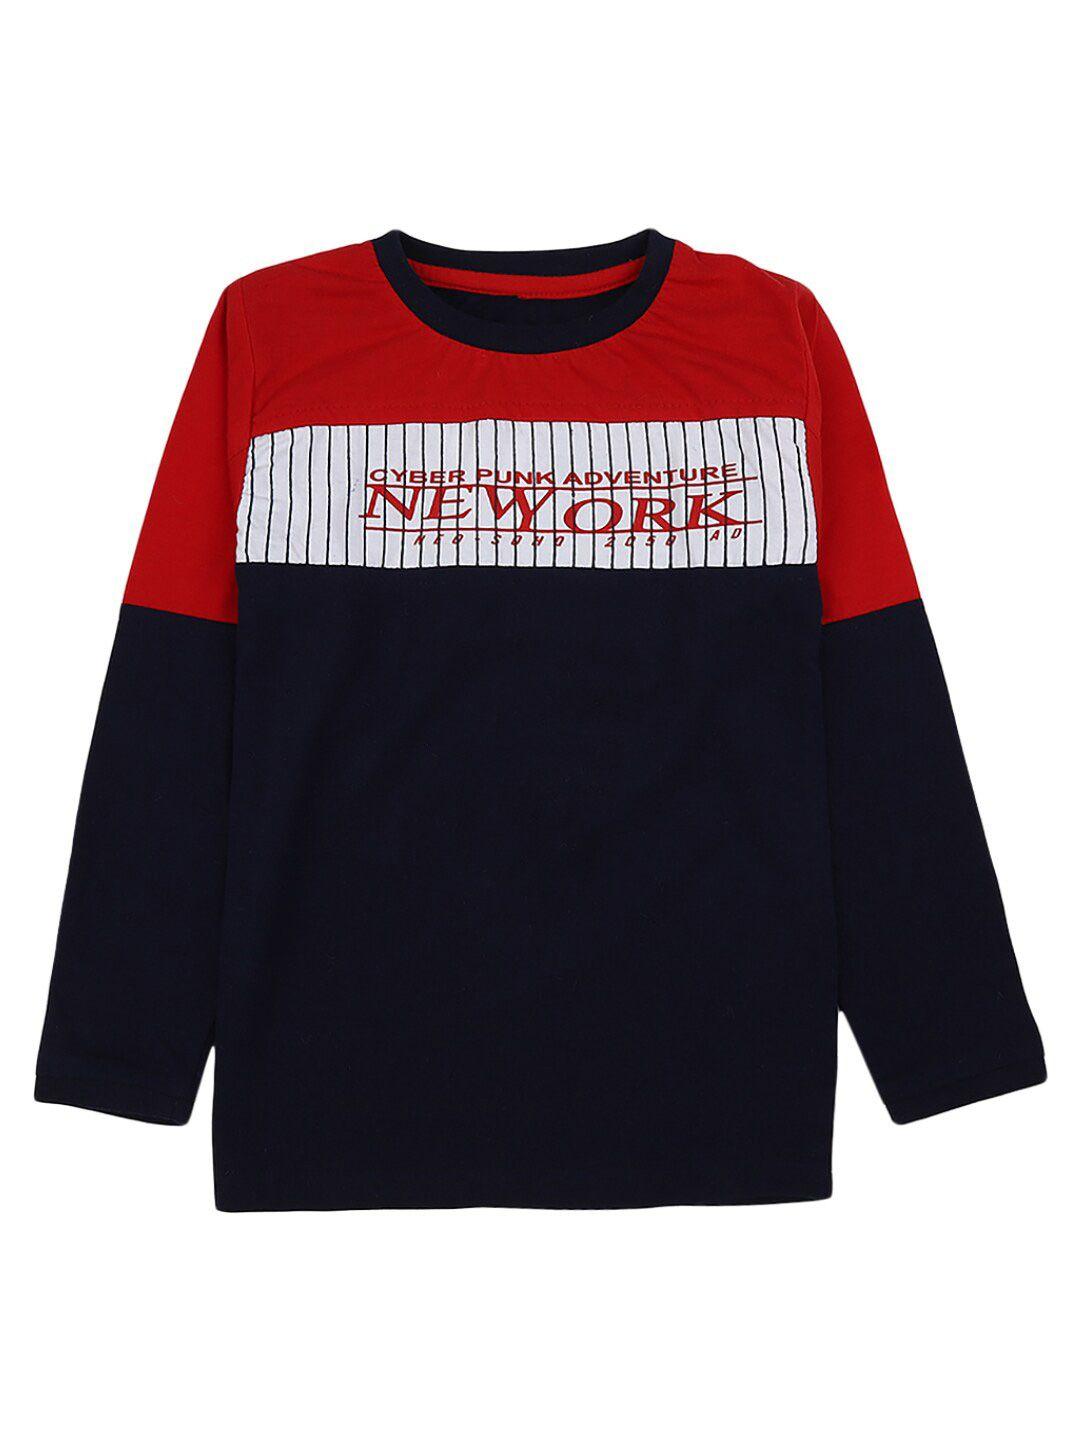 v-mart boys navy blue & red colourblocked t-shirt